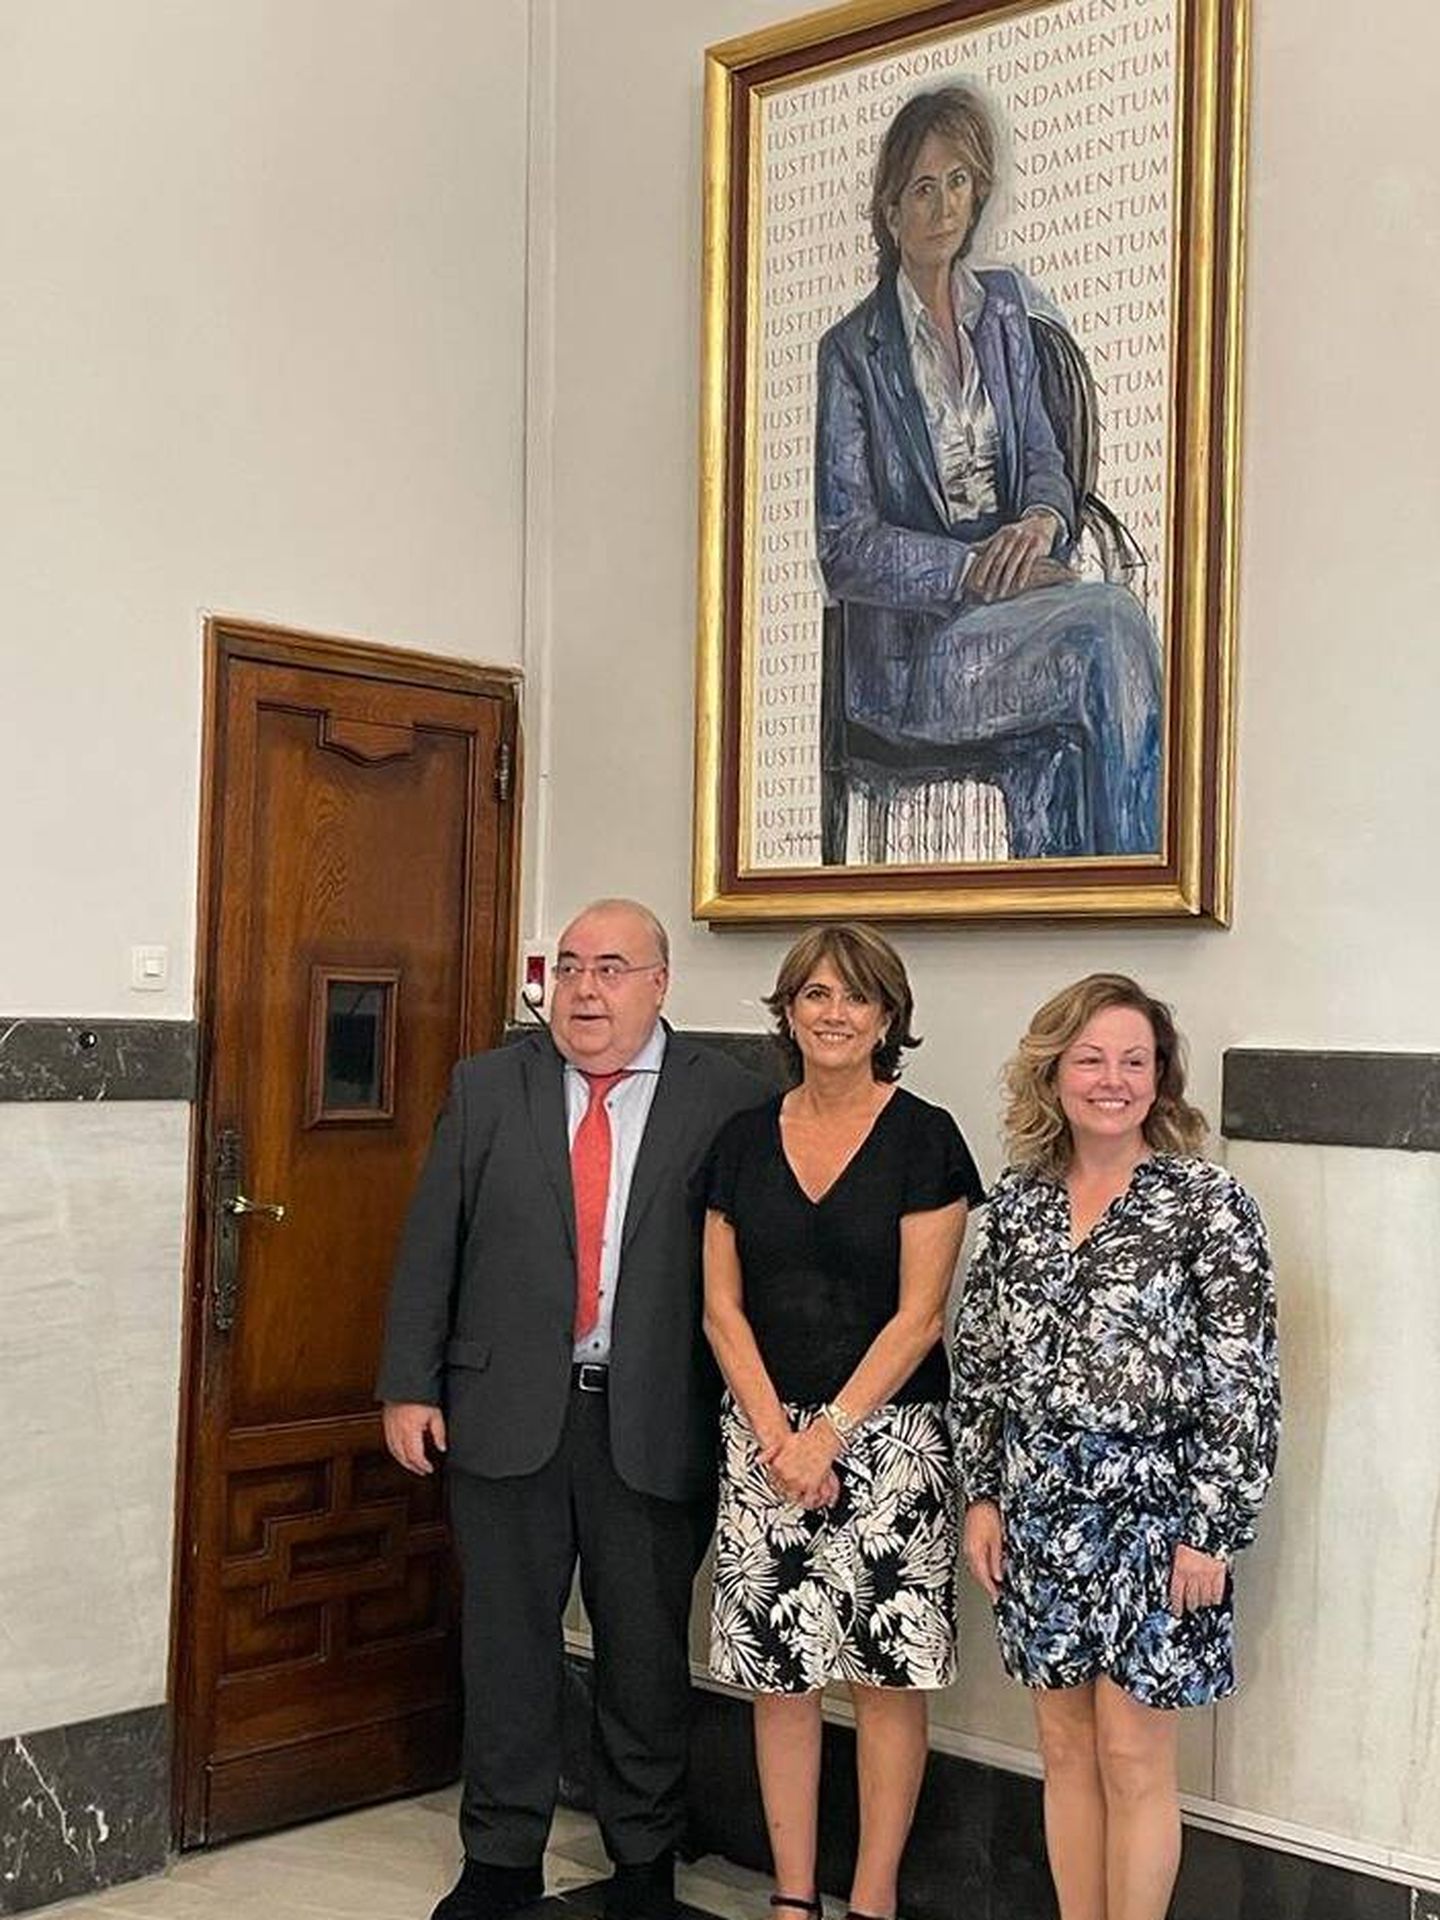 Tontxu Rodríguez, Dolores Delgado y Rita Martorell, autora del retrato. (Cortesía Ministerio del Interior)